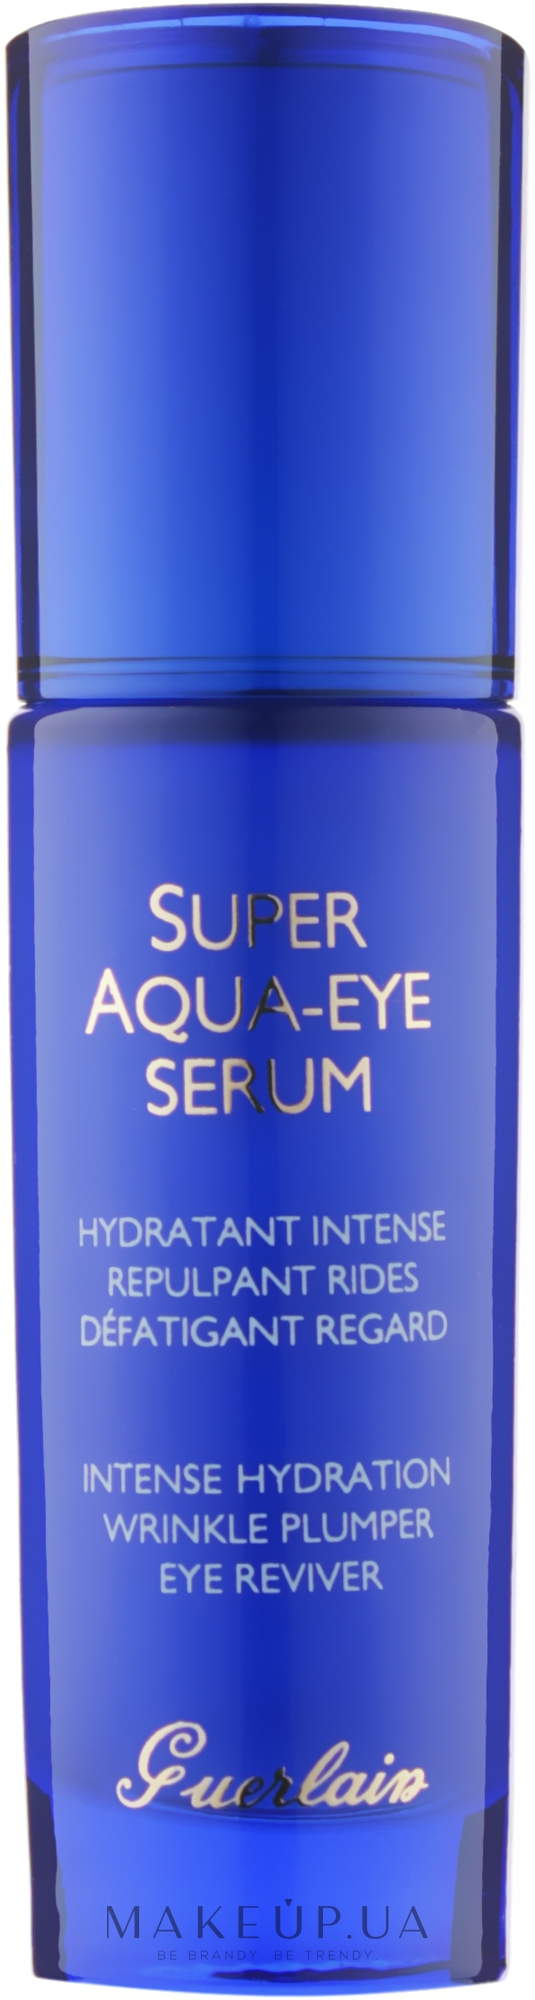 Guerlain Super Aqua-Eye Serum - Сыворотка для кожи вокруг глаз